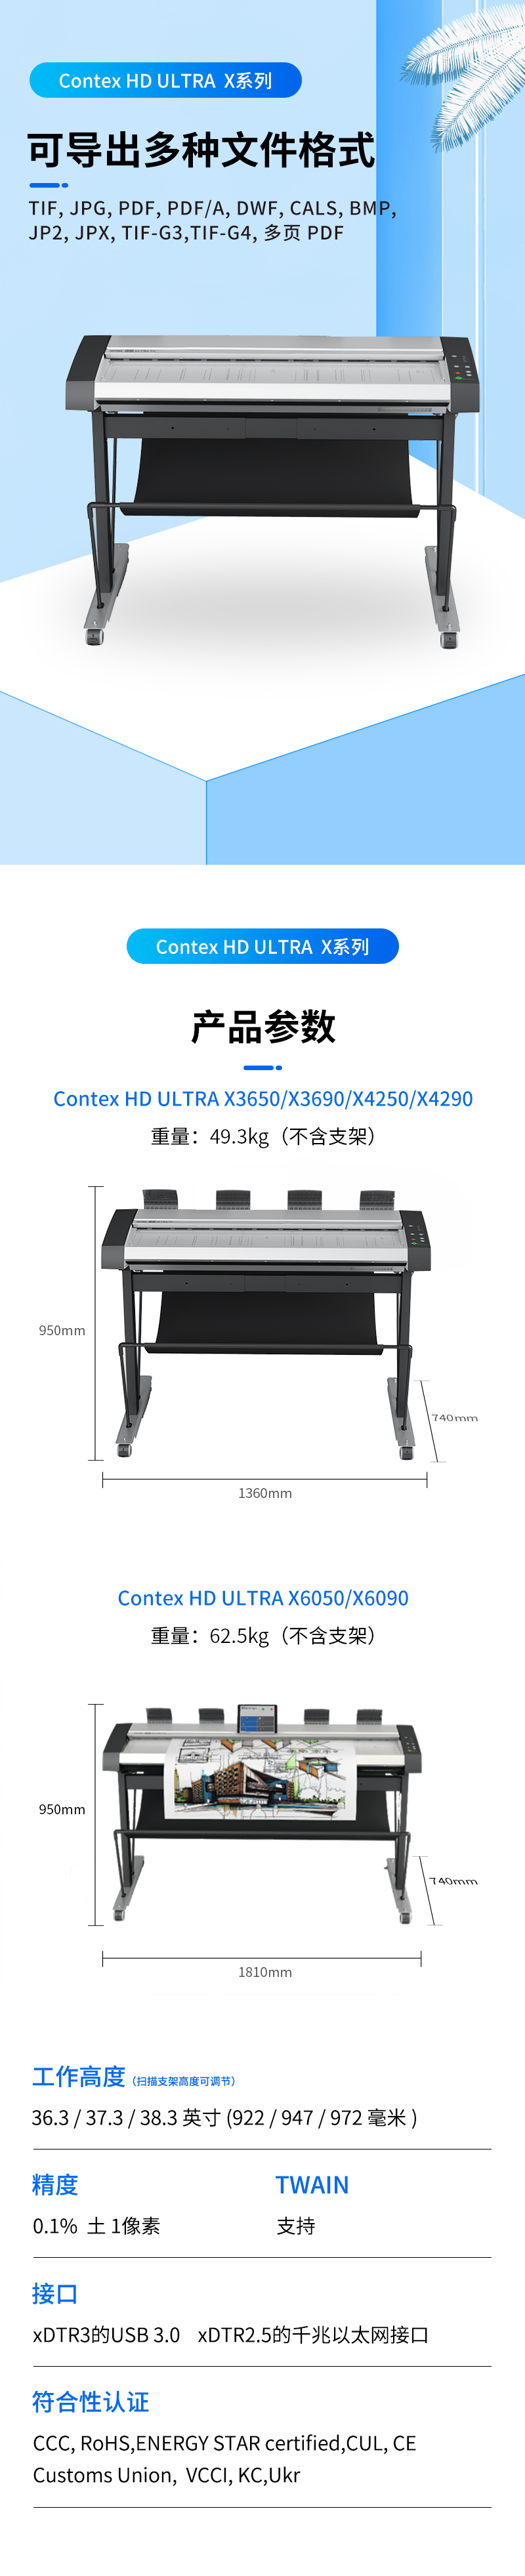 Contex HD Ultra X 3650